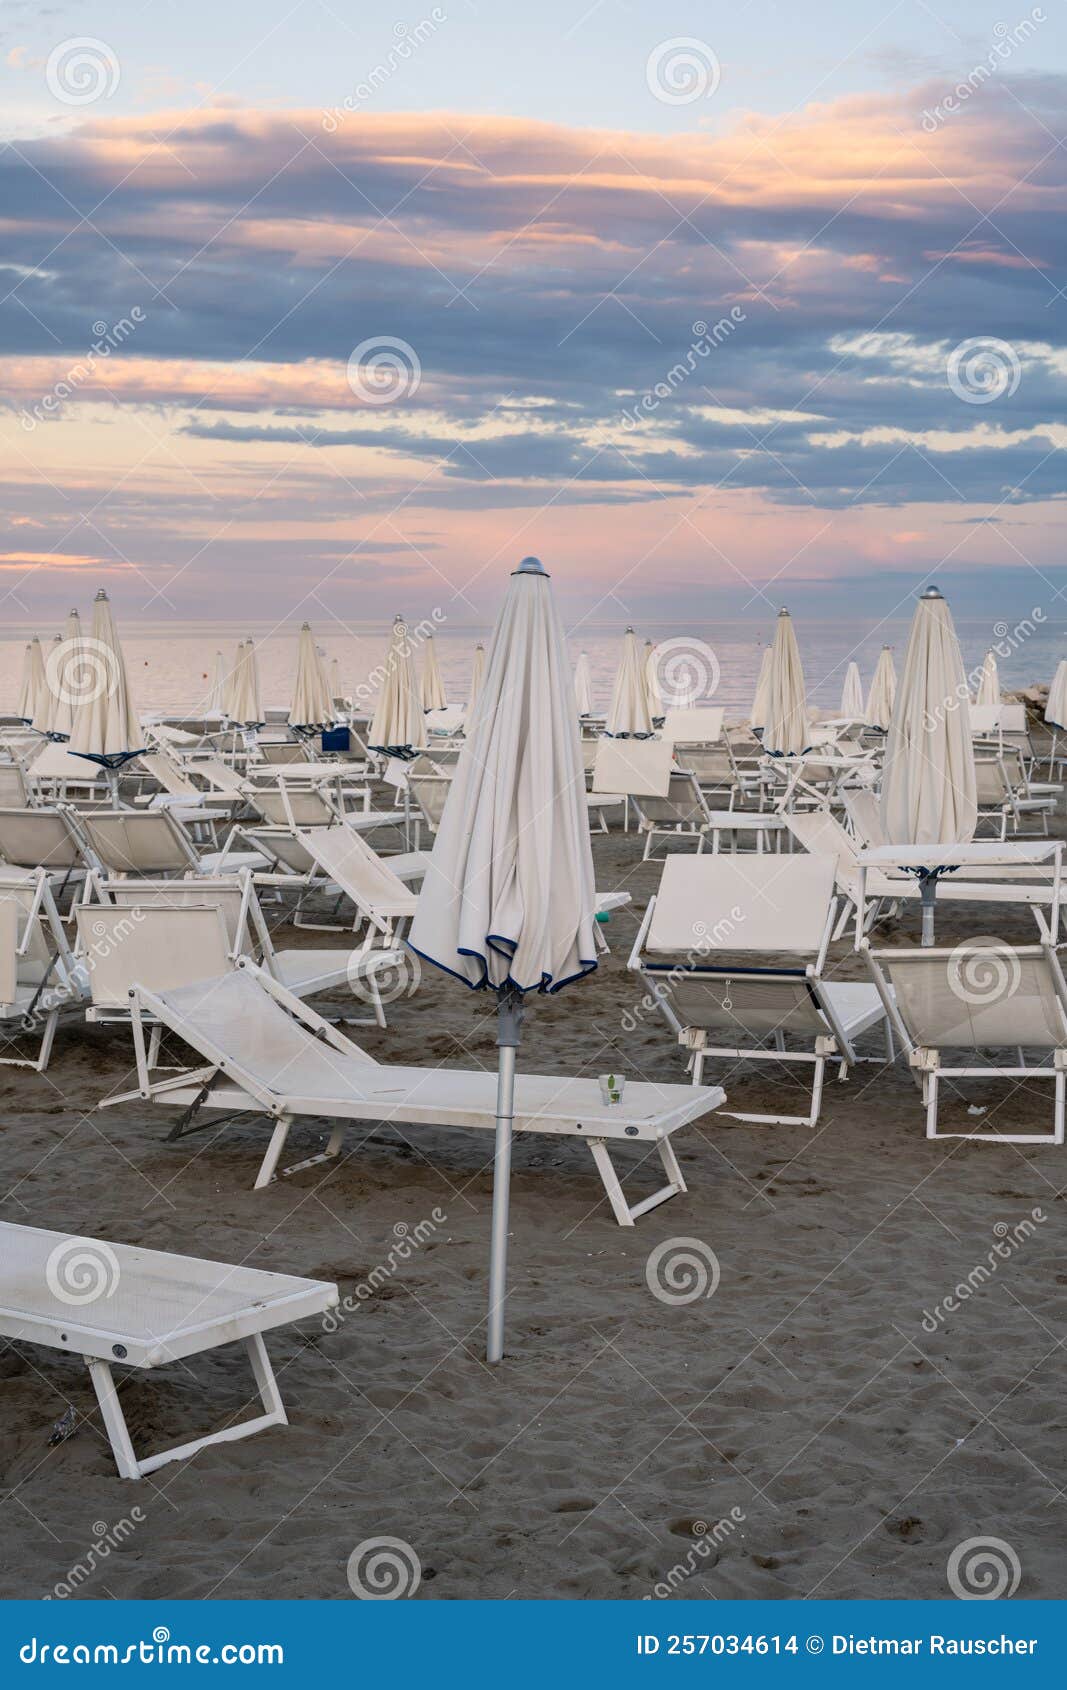 lido di venezia beach in venice at dusk